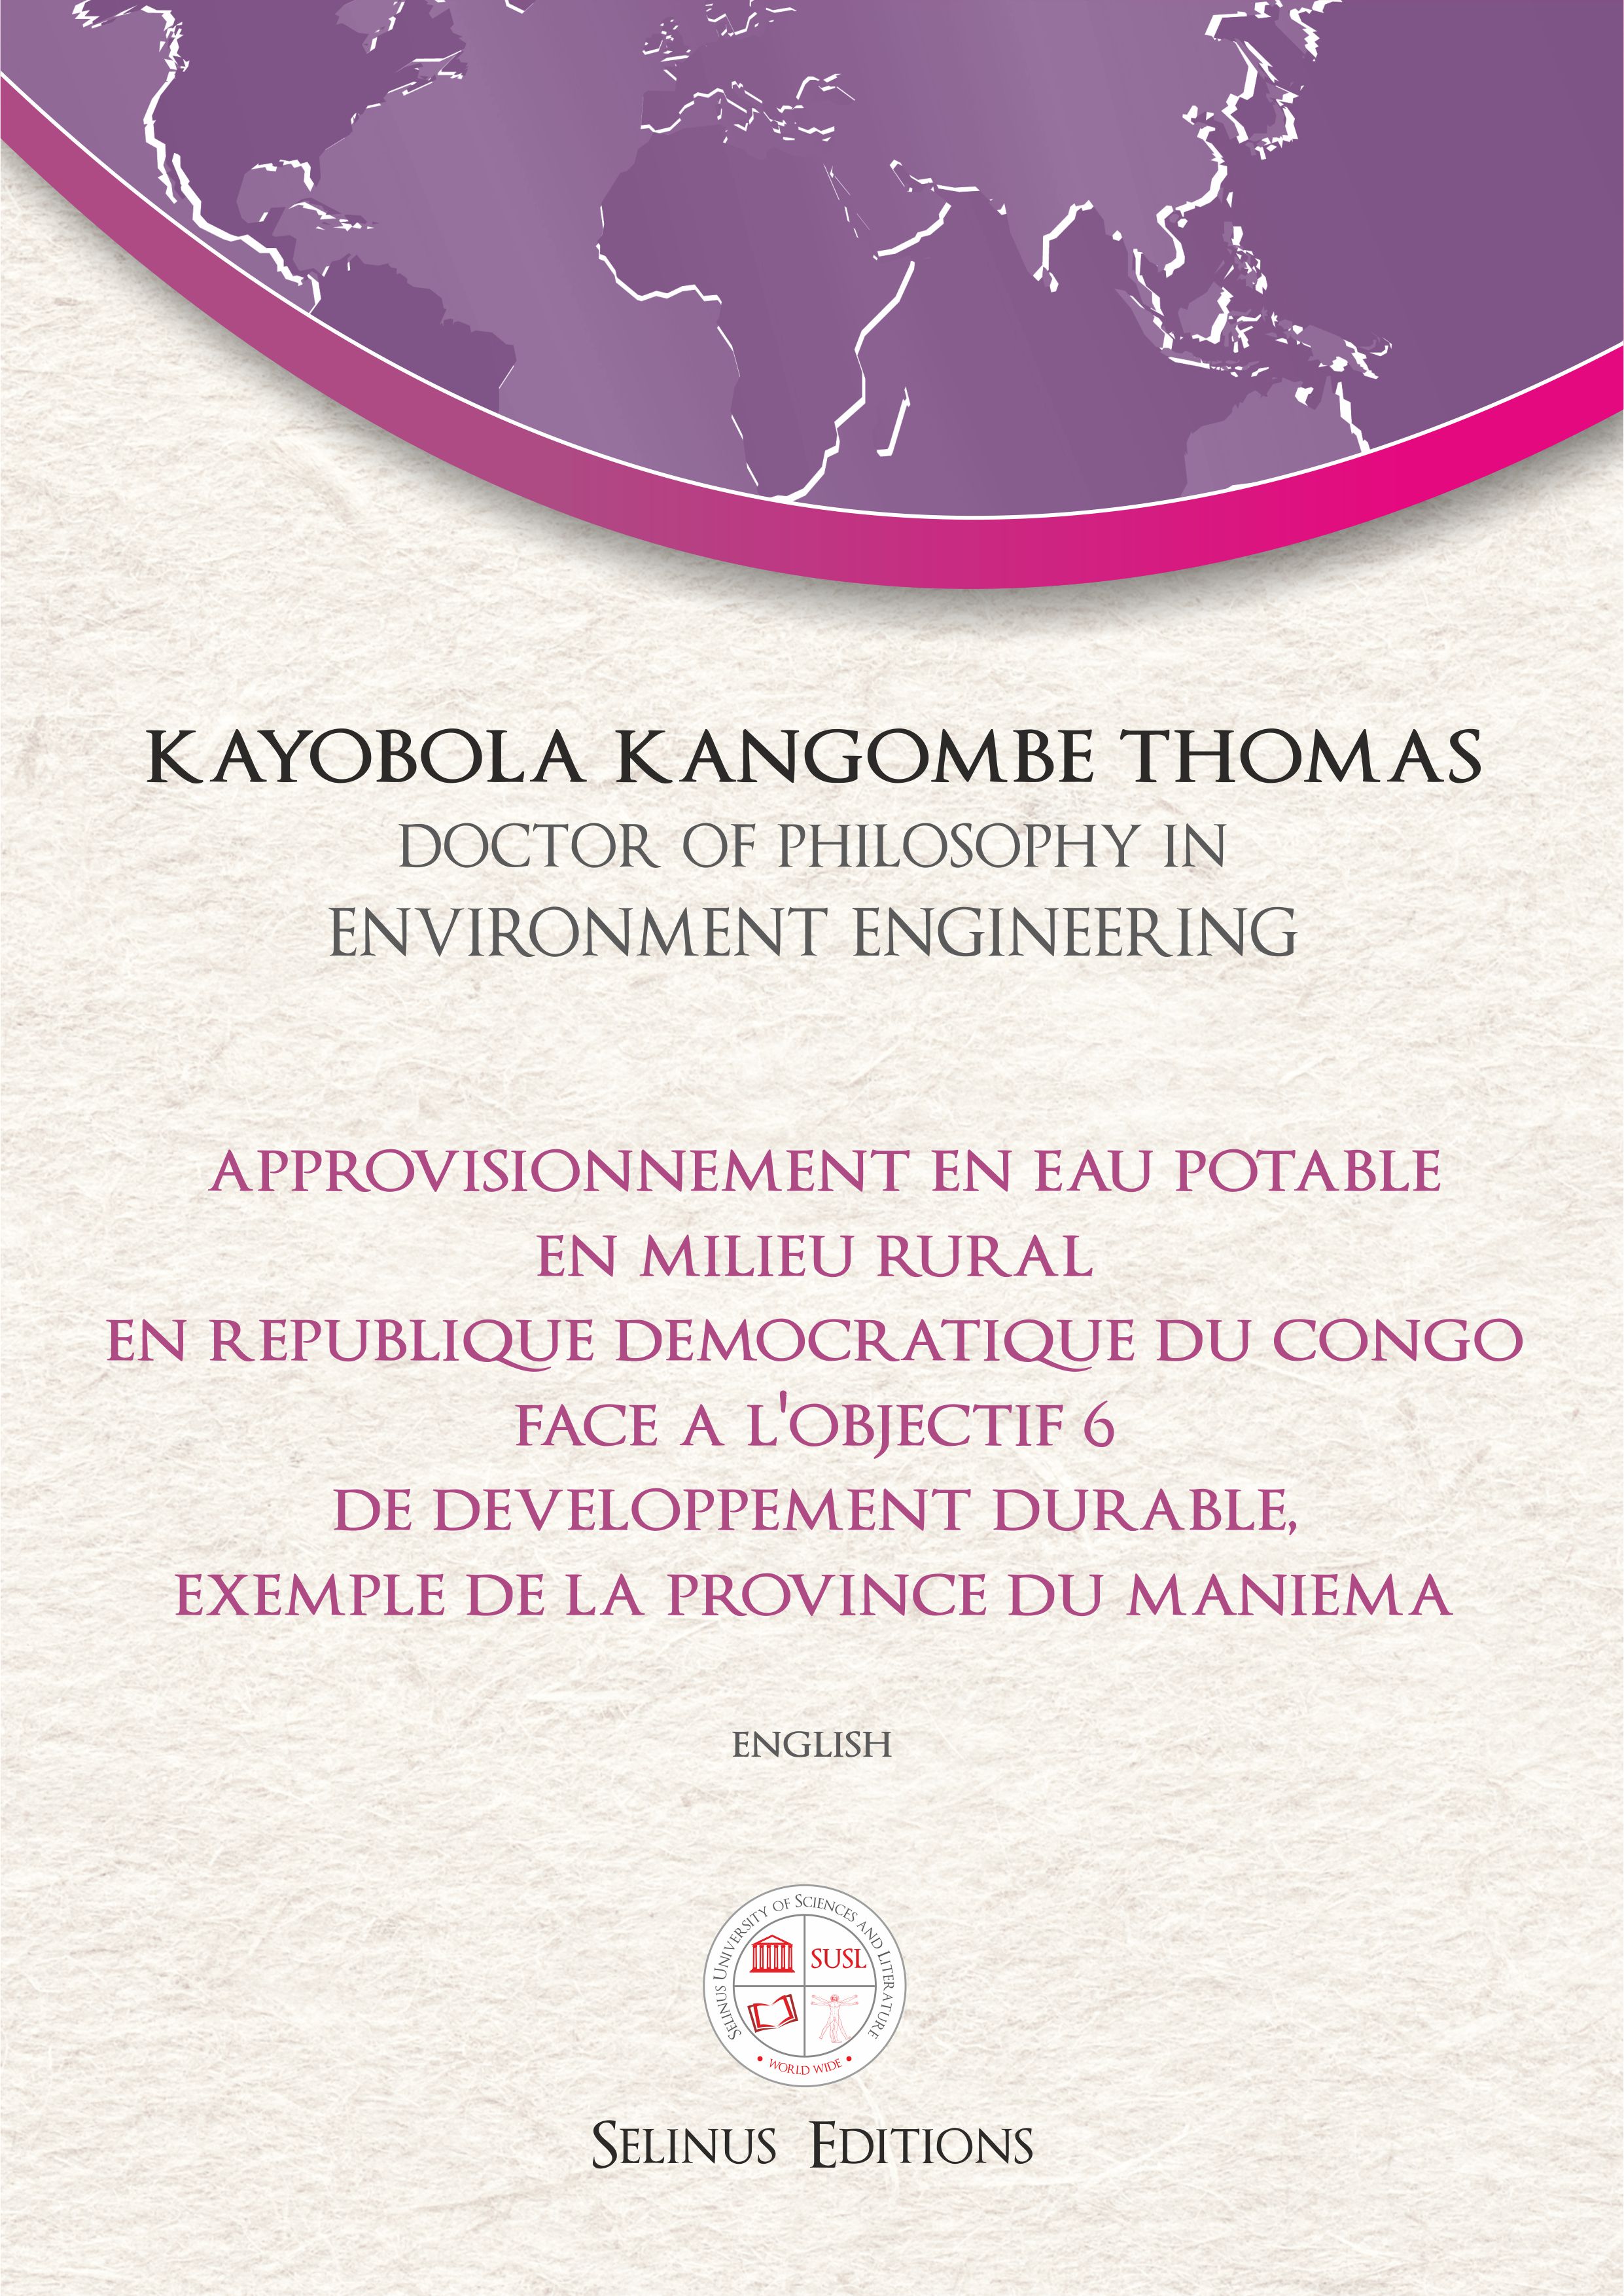 Thesis Kayobola Kangombe Thomas